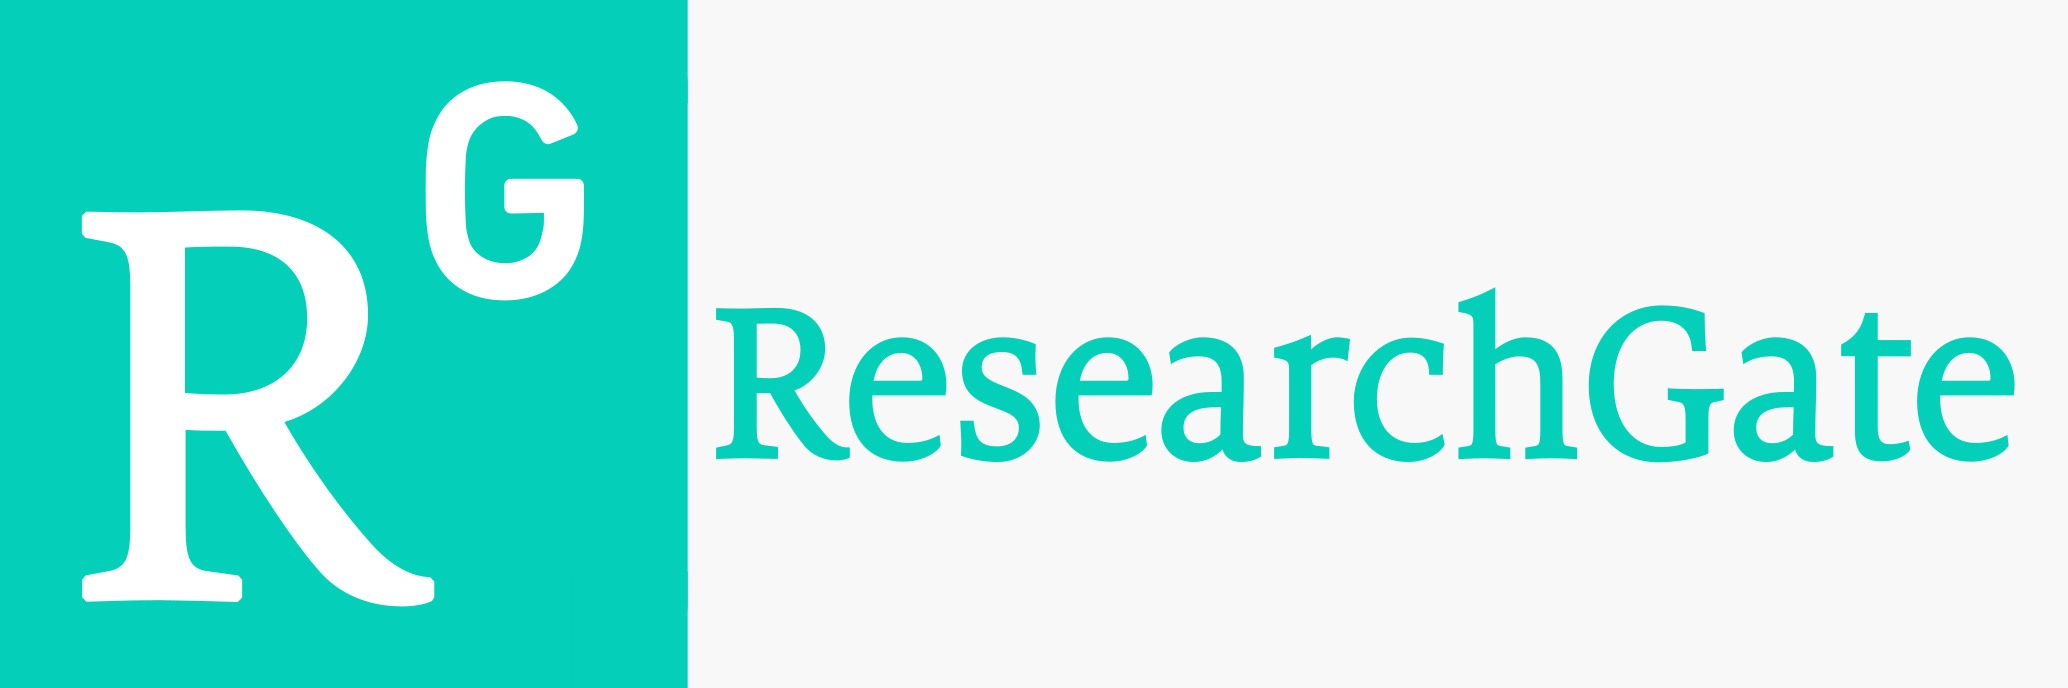 Logotipo do Research Gate com link externo para exibir a página da Revista no indexador